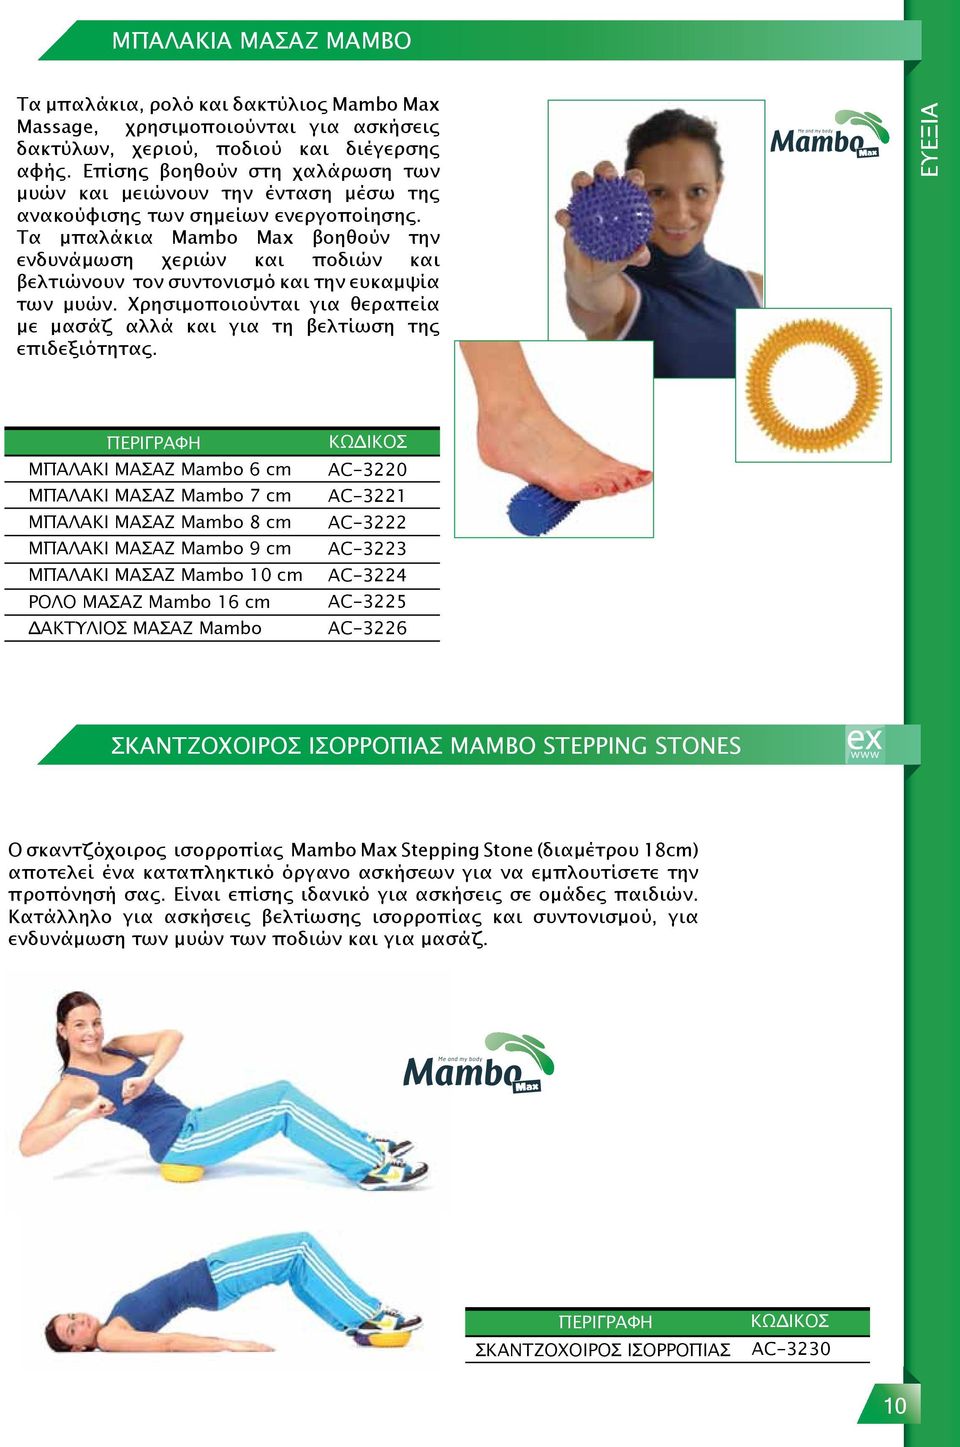 Τα μπαλάκια Mambo Max βοηθούν την ενδυνάμωση χεριών και ποδιών και βελτιώνουν τον συντονισμό και την ευκαμψία των μυών.